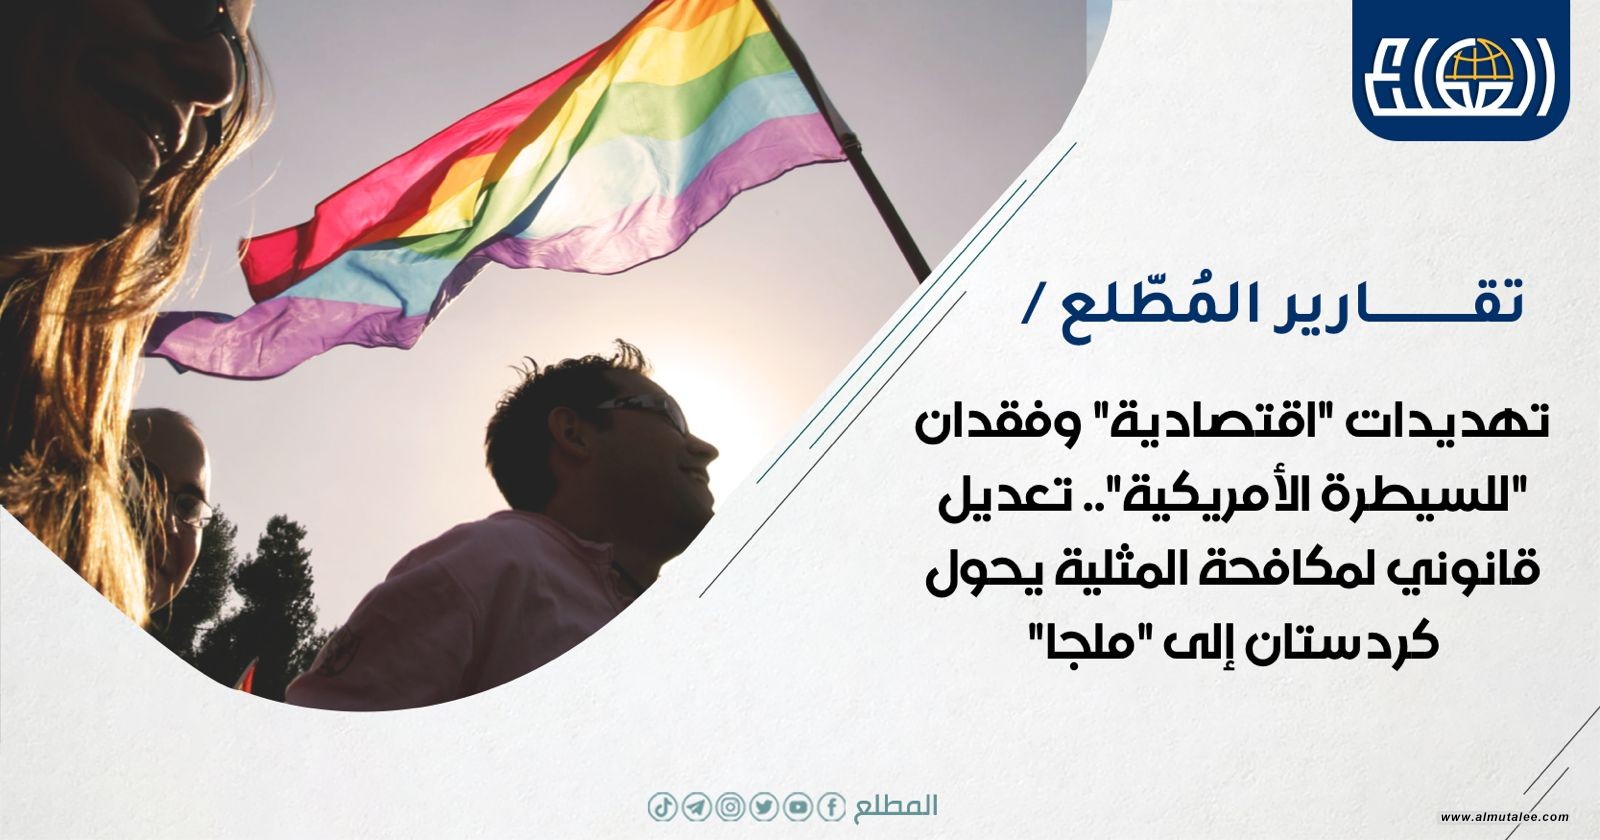 تهديدات "اقتصادية" وفقدان "للسيطرة الأمريكية".. تعديل قانوني لمكافحة المثلية يحول كردستان إلى "ملجأ"